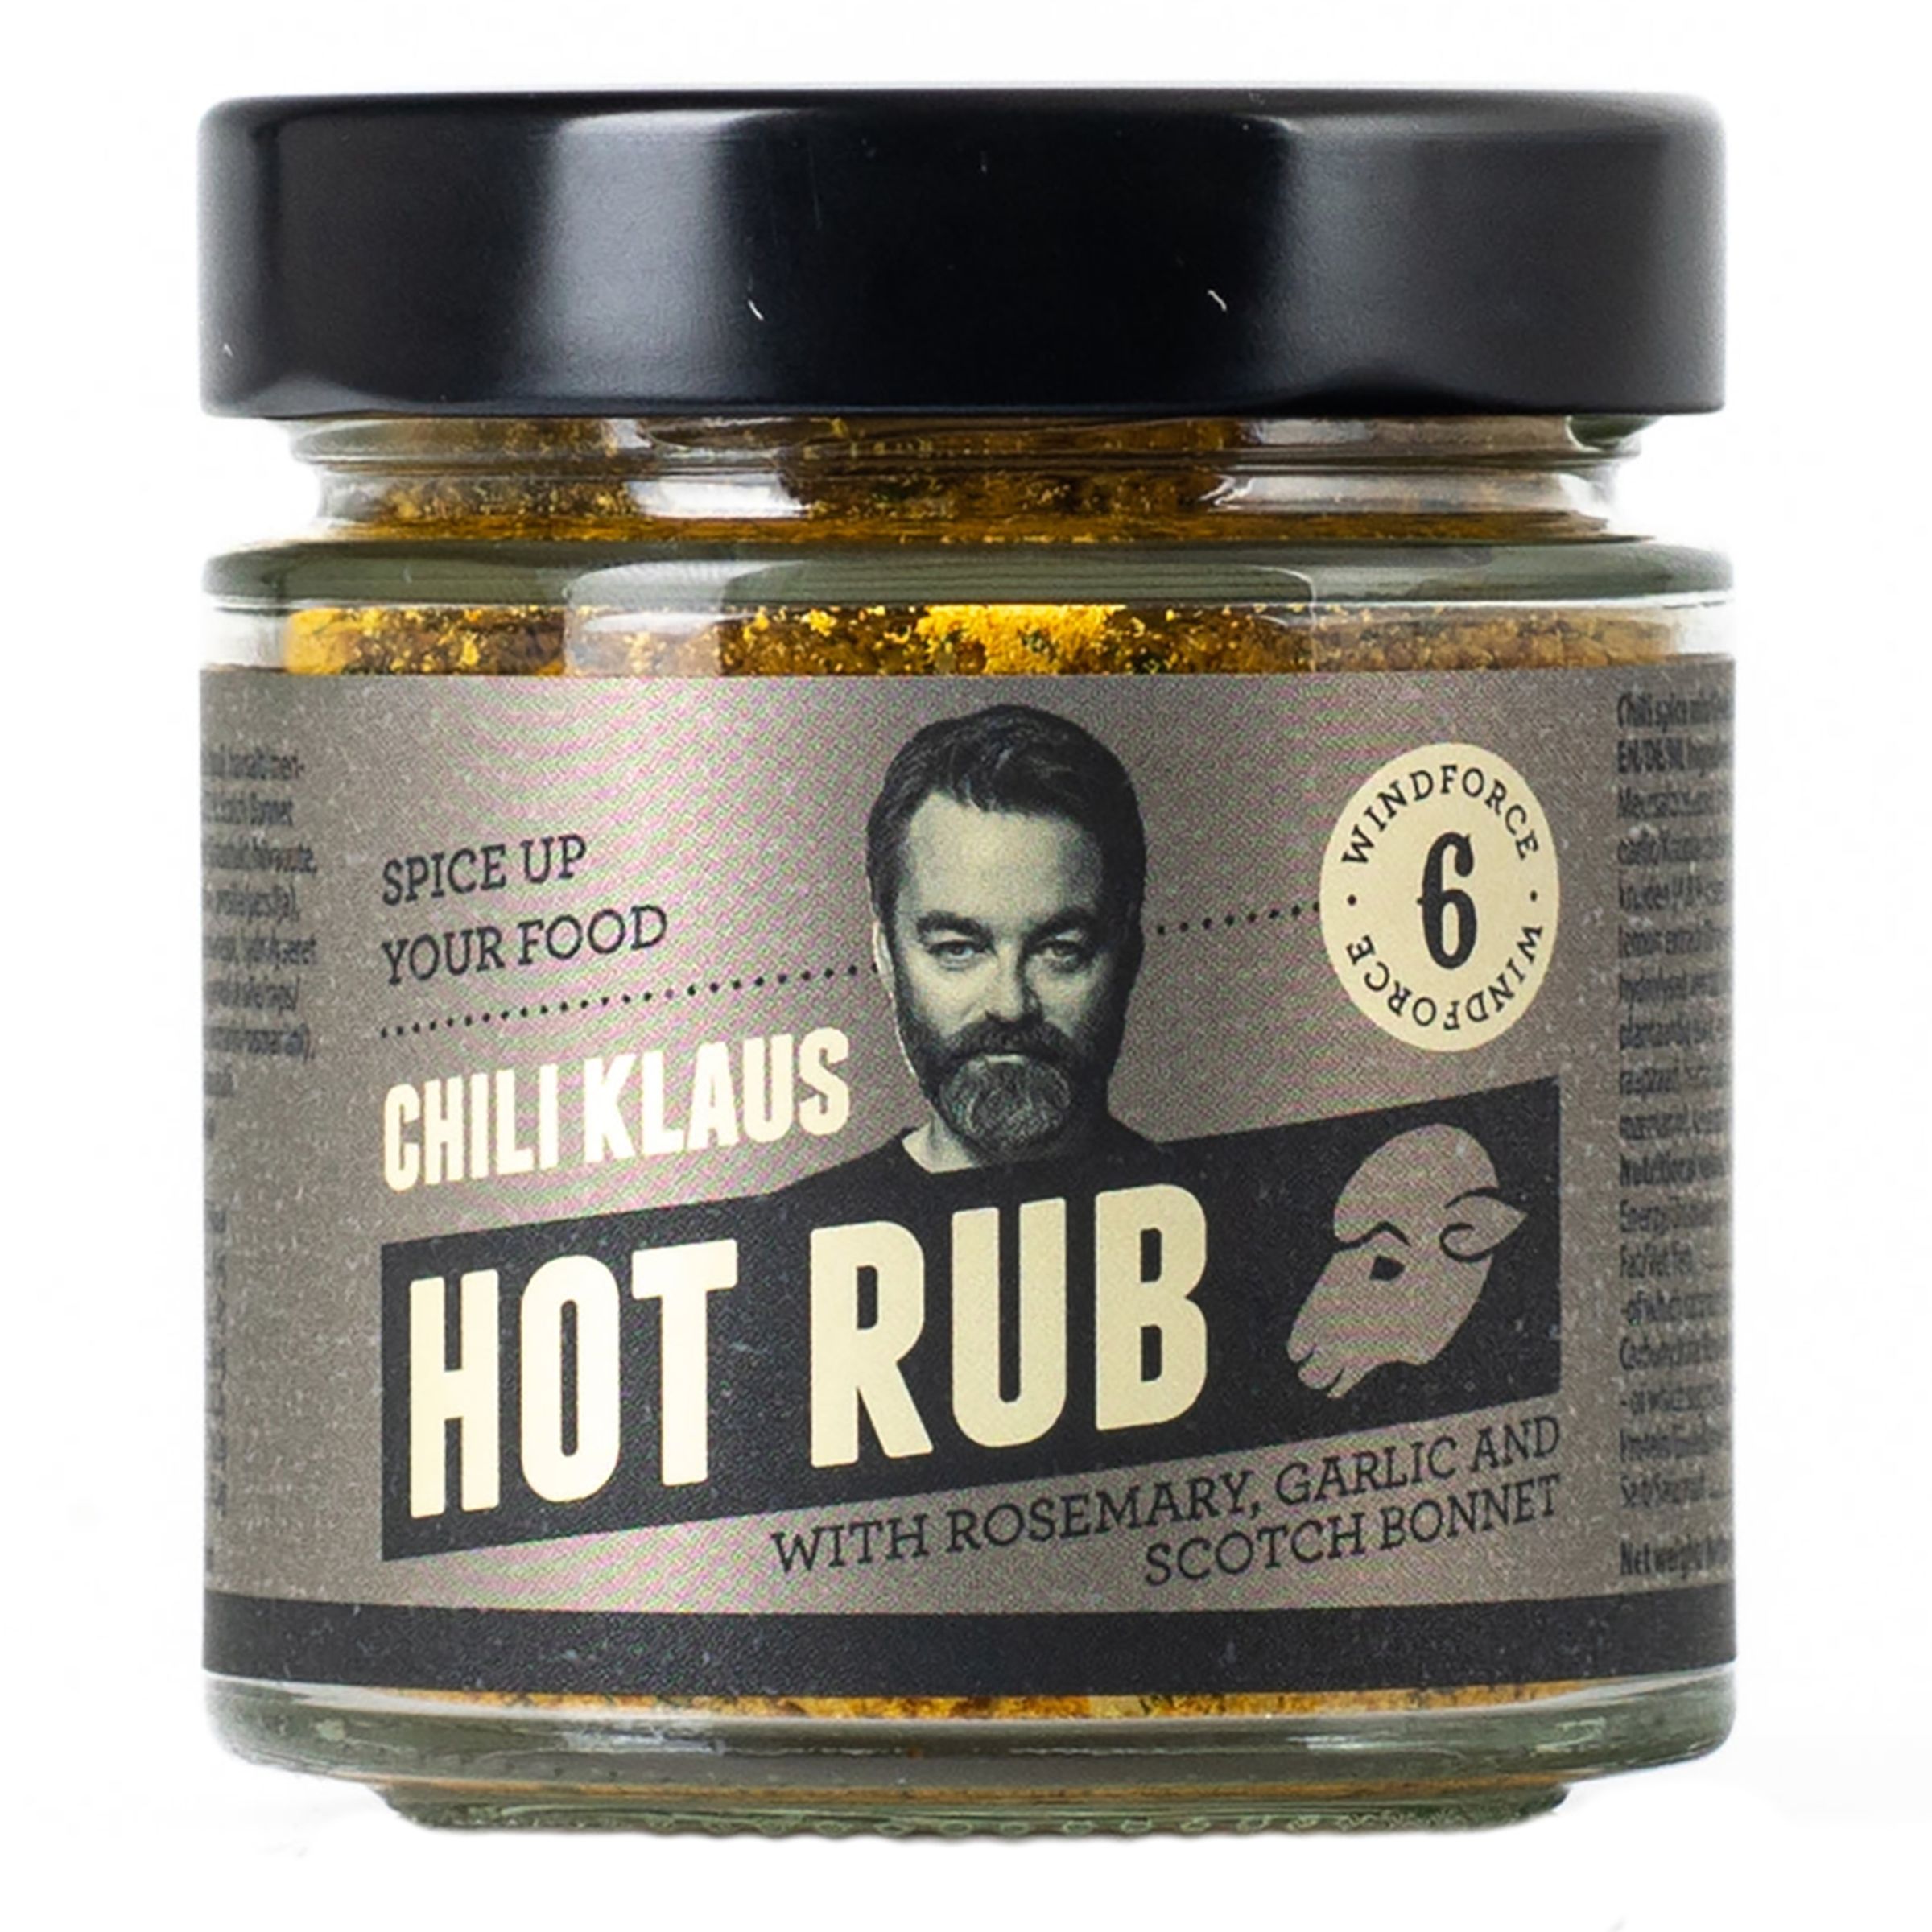 Läs mer om Chili Klaus Hot Rub Rosemary Garlic & Scotch Bonnet